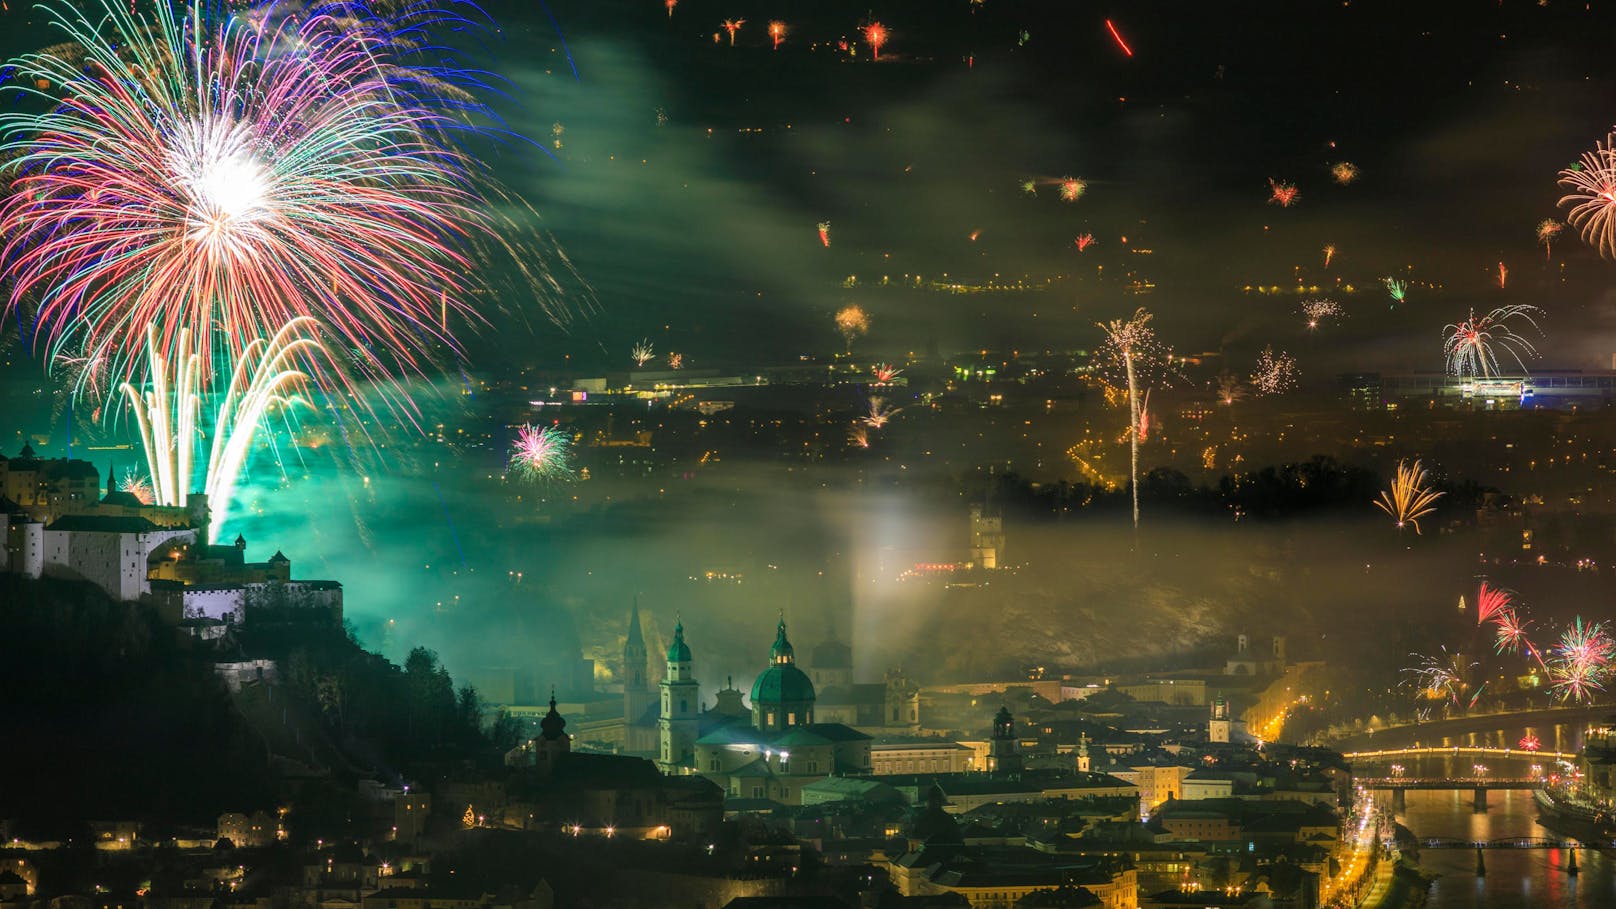 In der Stadt Salzburg fand das einzige offizielle Feuerwerk statt. In Wien war es verboten.